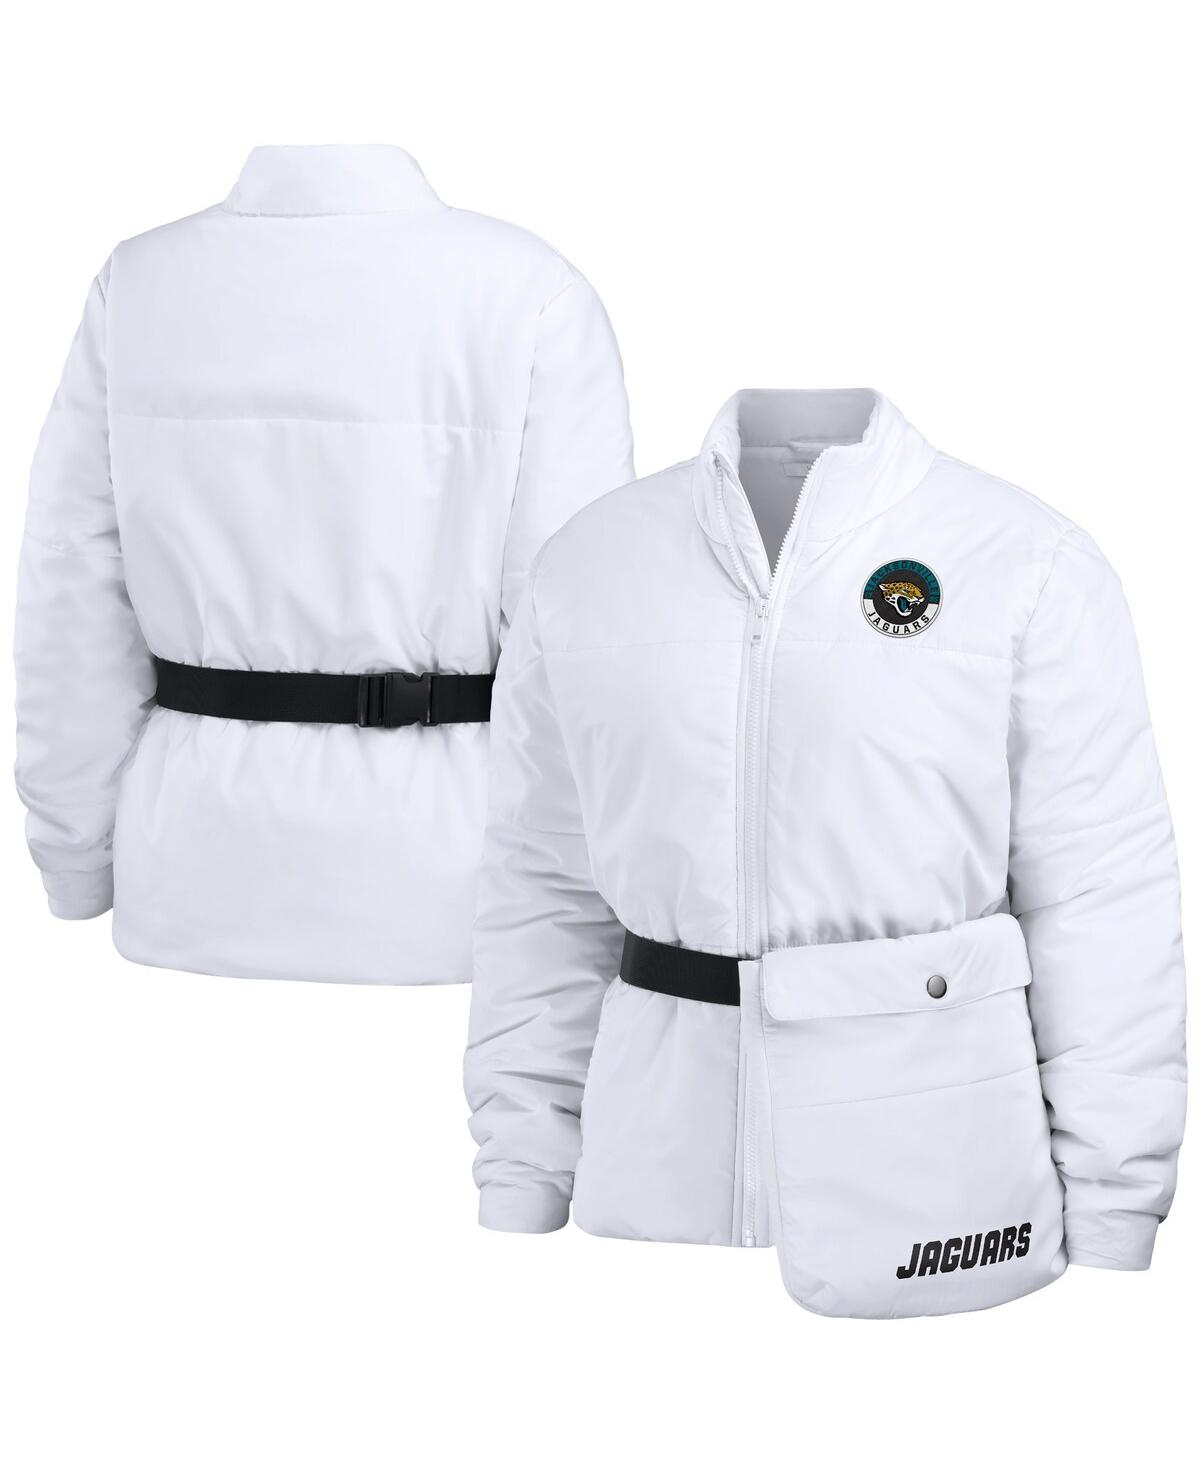 Shop Wear By Erin Andrews Women's  White Jacksonville Jaguars Packaway Full-zip Puffer Jacket